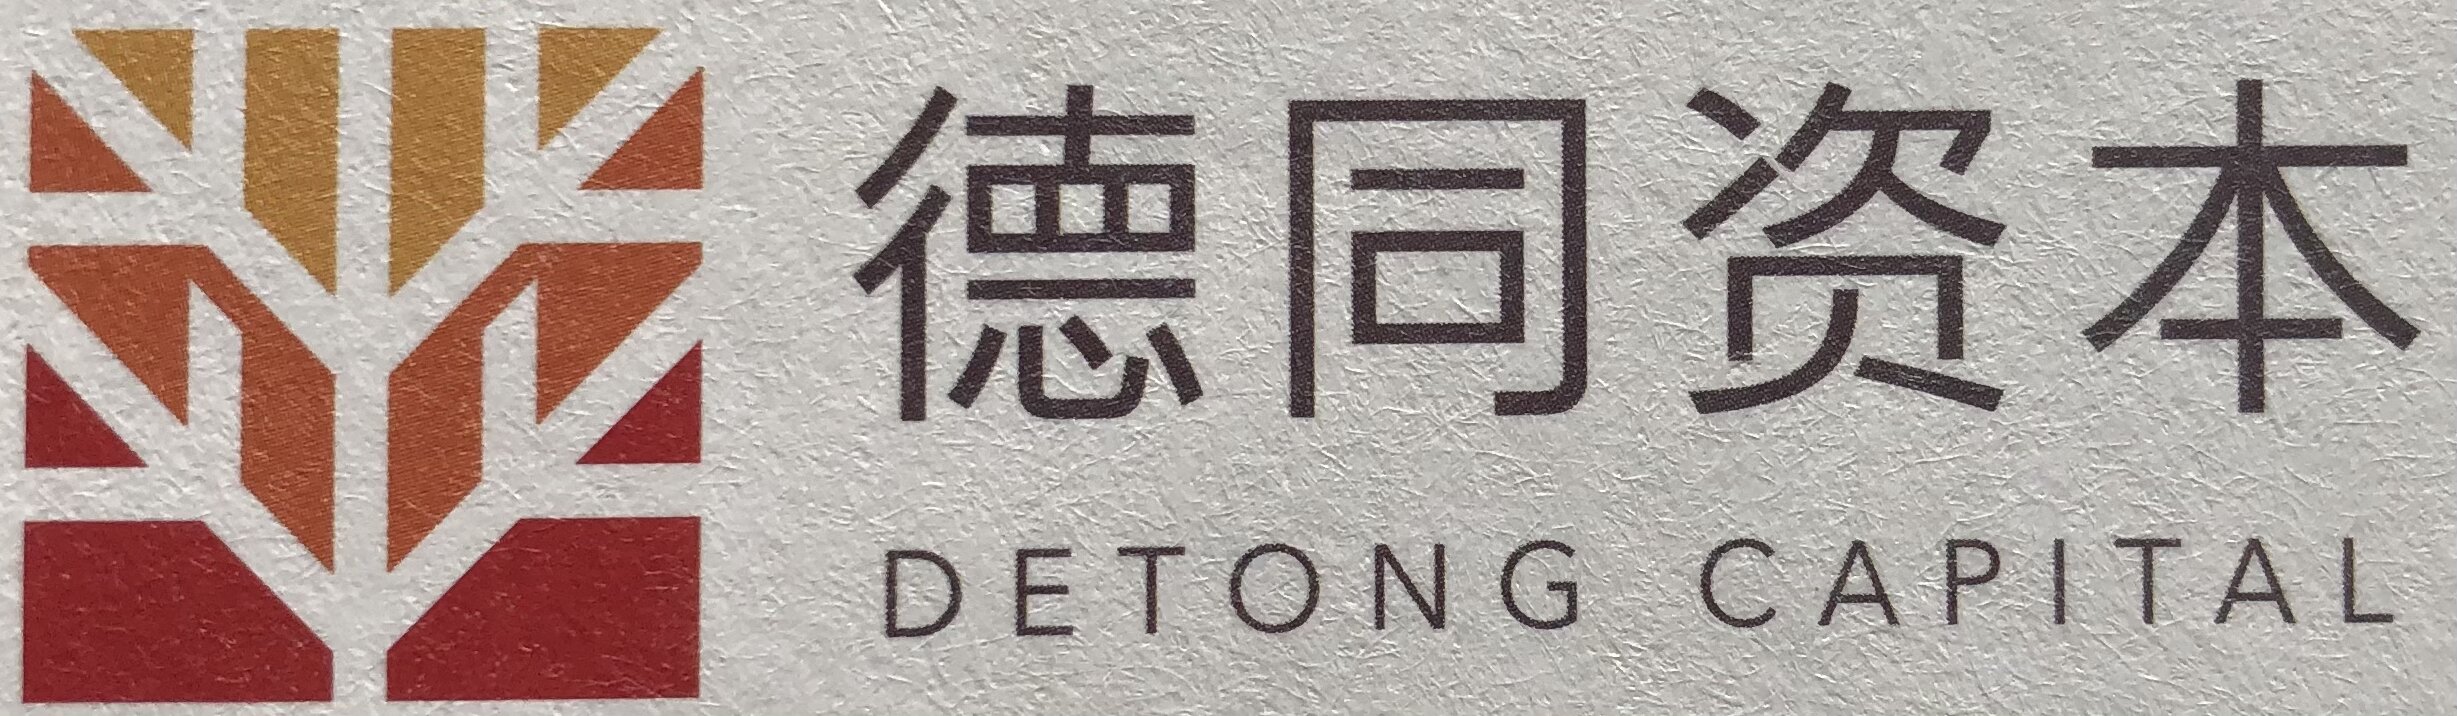 dt_logo1.jpg